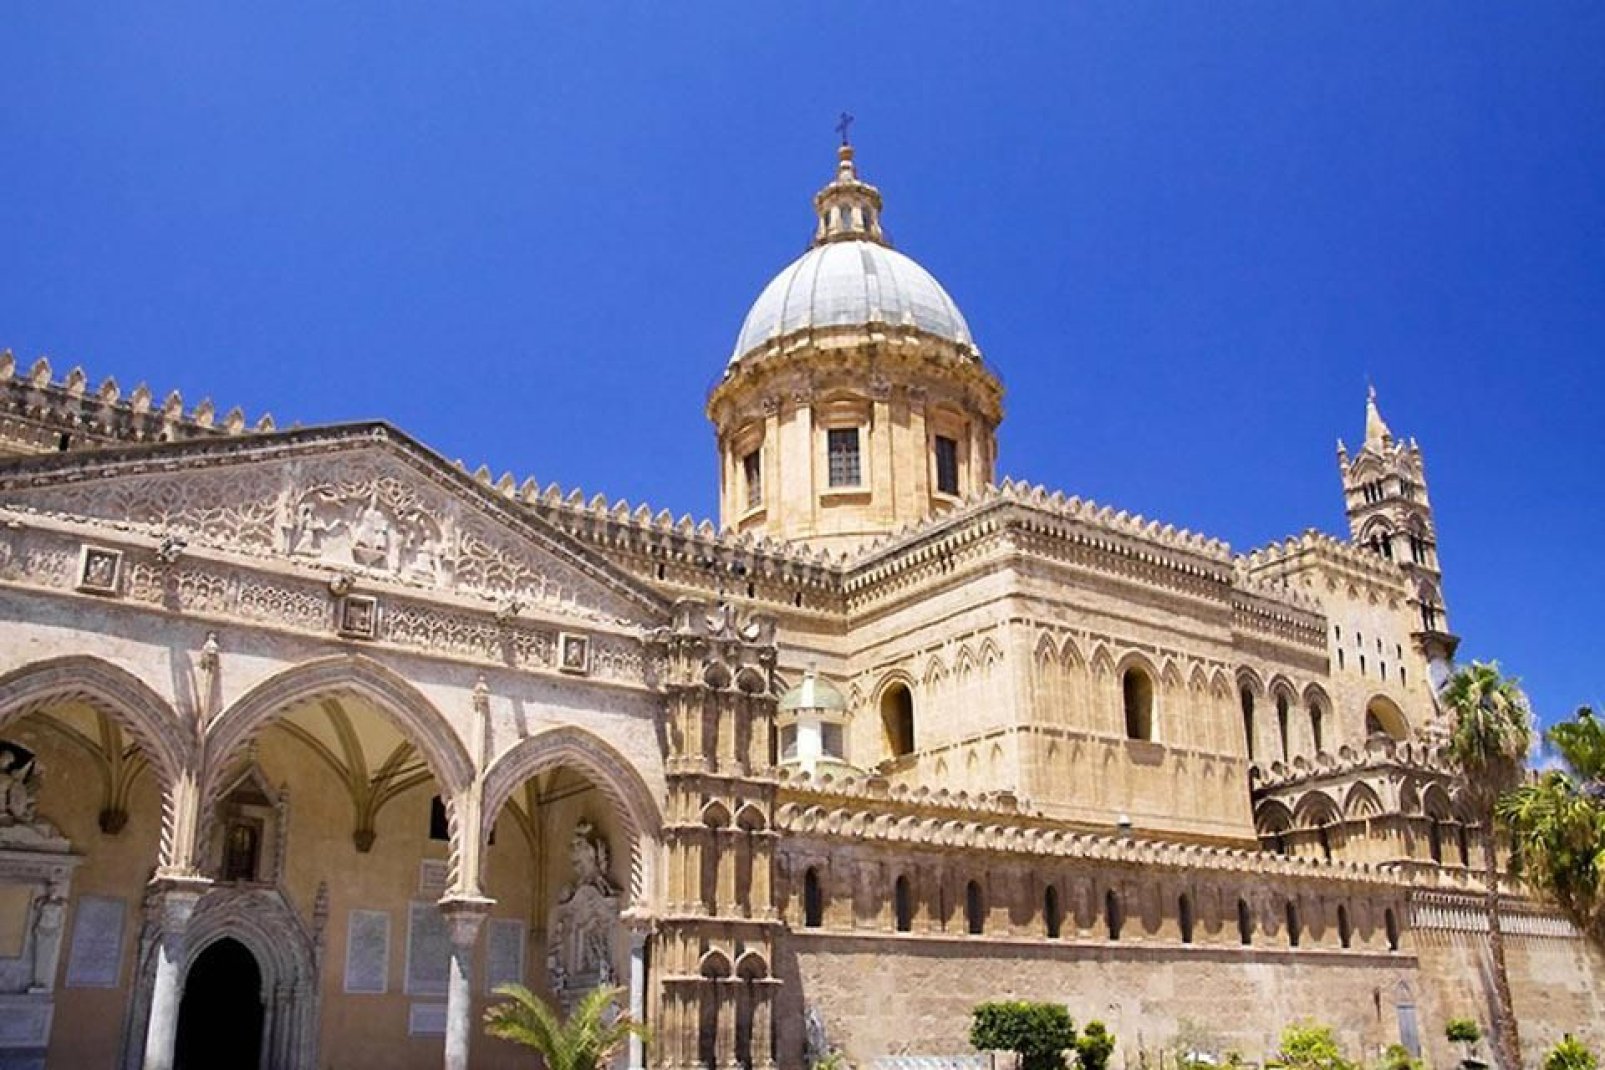 La Cattedrale di Palermo,dedicata alla Vergine Maria Santissima Assunta in cielo, è un grandioso complesso architettonico composto in diversi stili